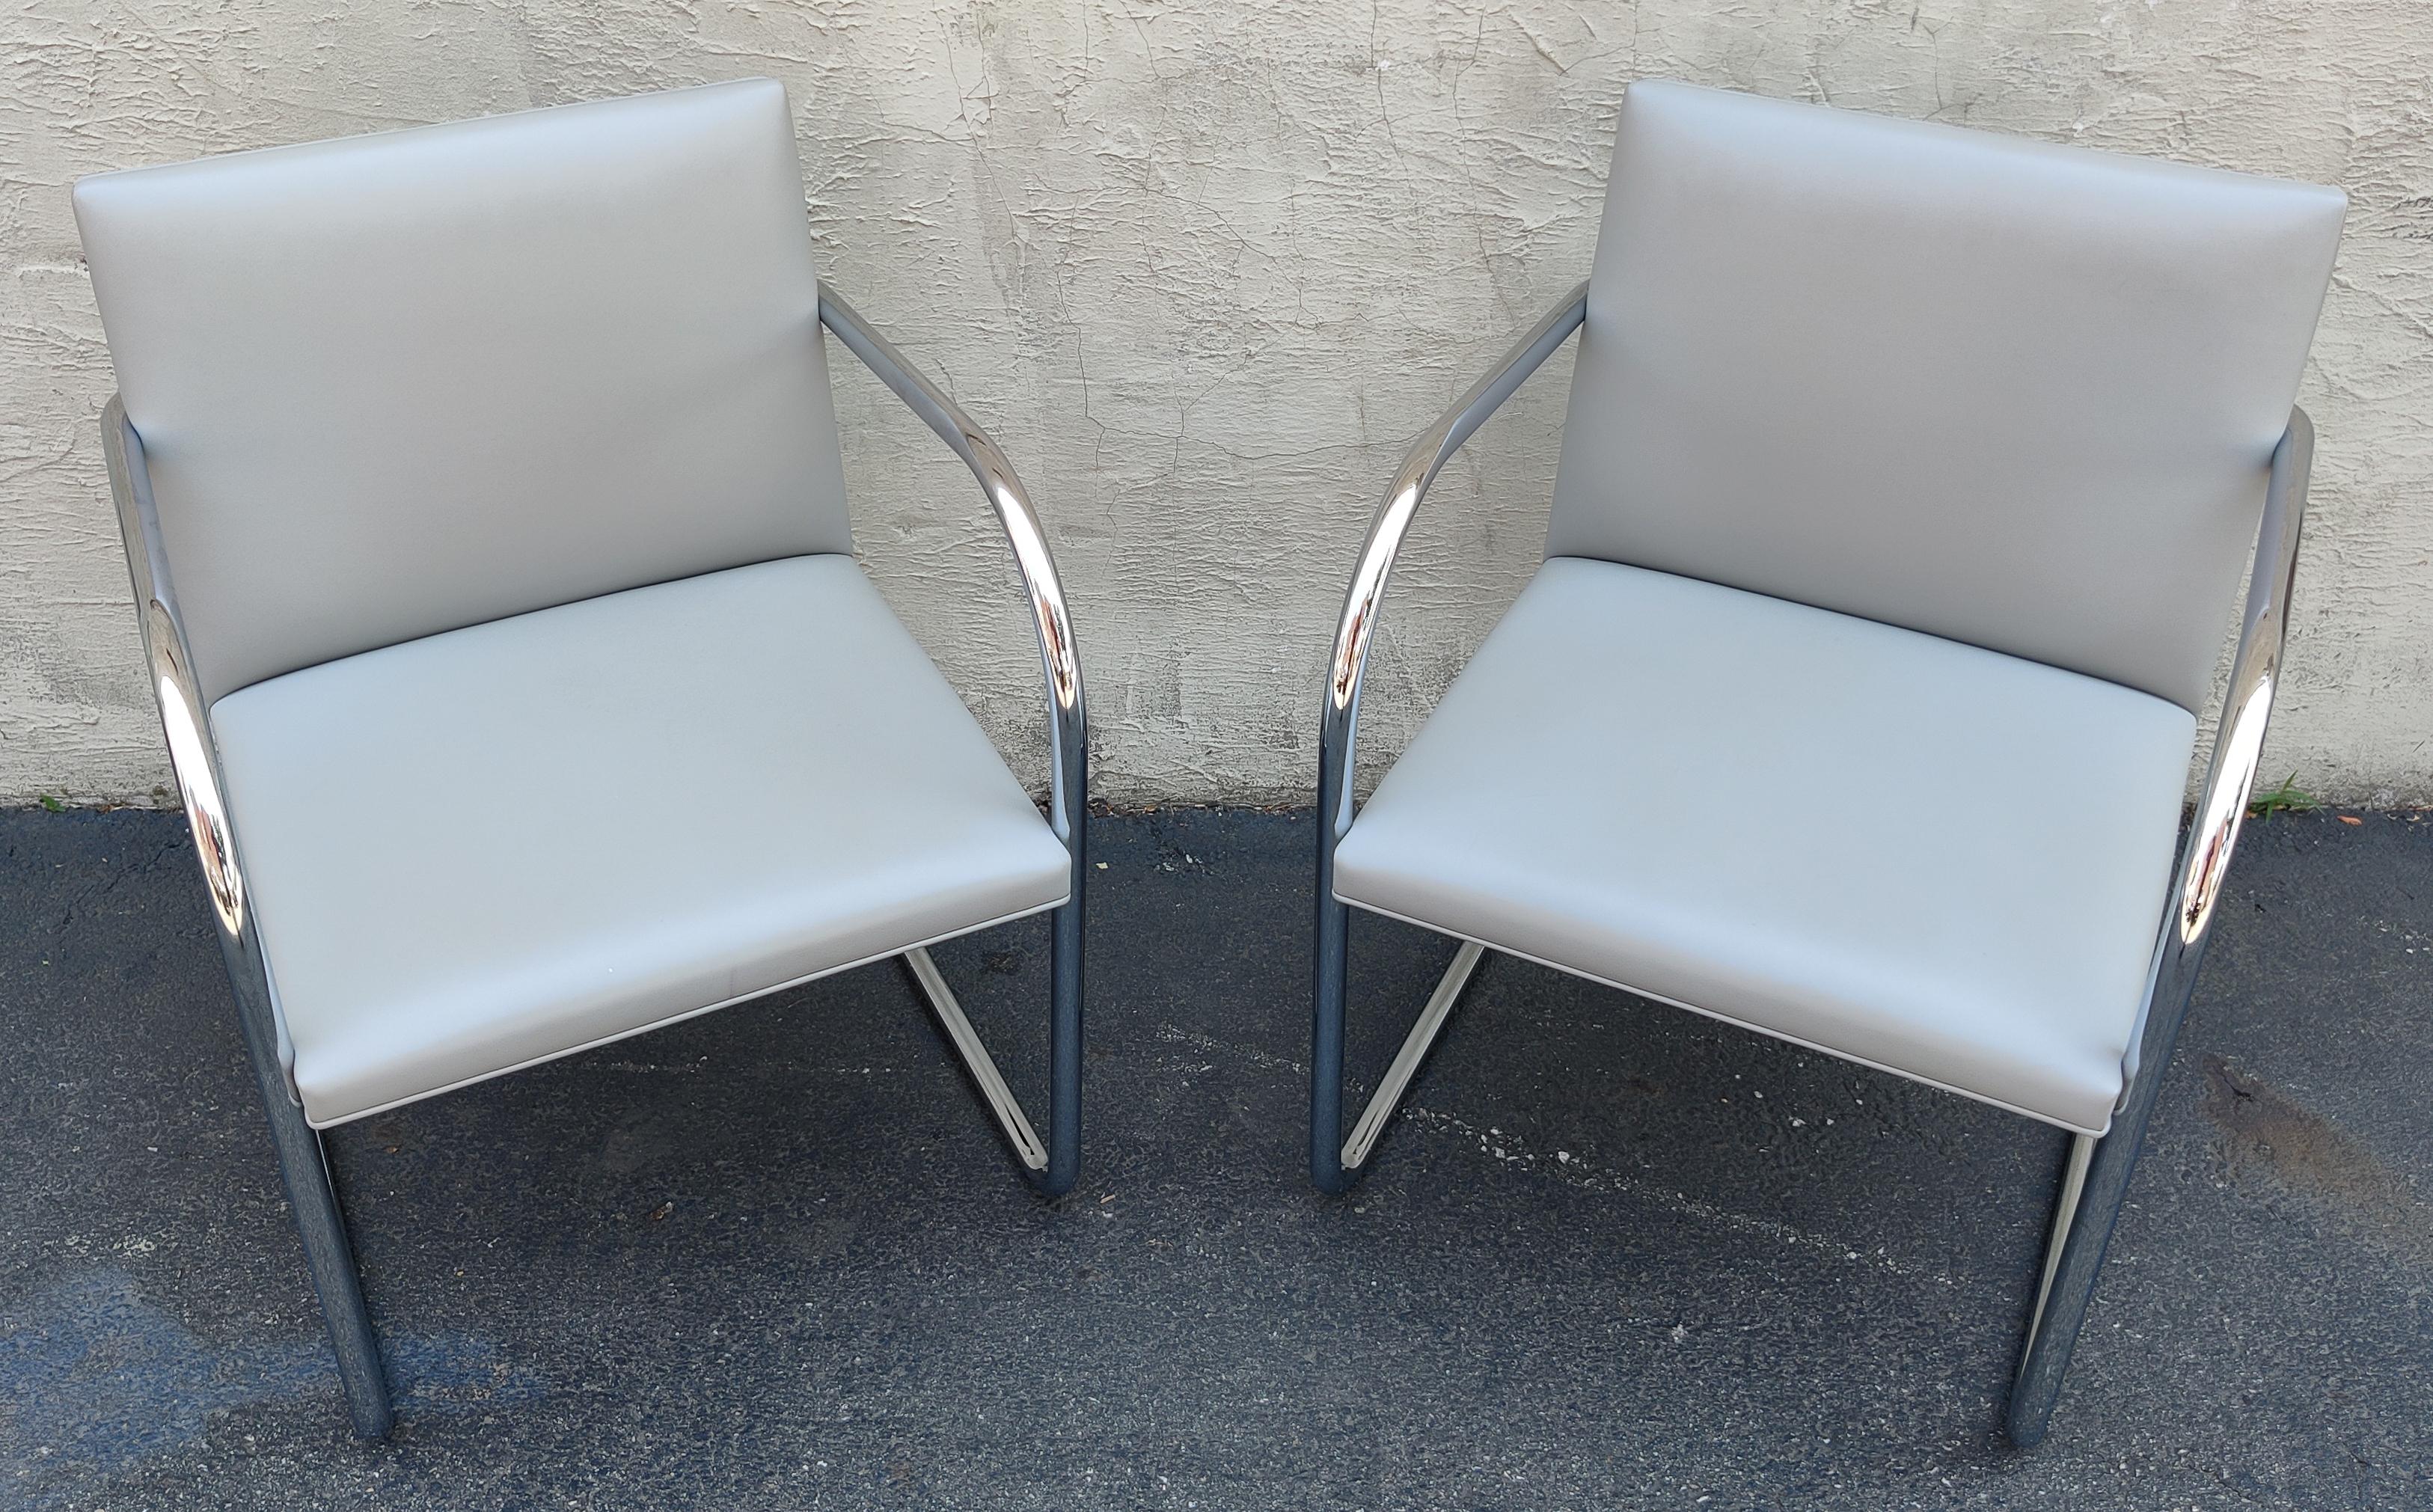 Conçue dans les années 1930 par Ludwig Mies van der Rohe, cette paire de chaises BRNO a été fabriquée par Knoll. Elles sont dotées d'un cadre en acier tubulaire chromé à la main et d'un design en porte-à-faux qui donne à la chaise l'impression de